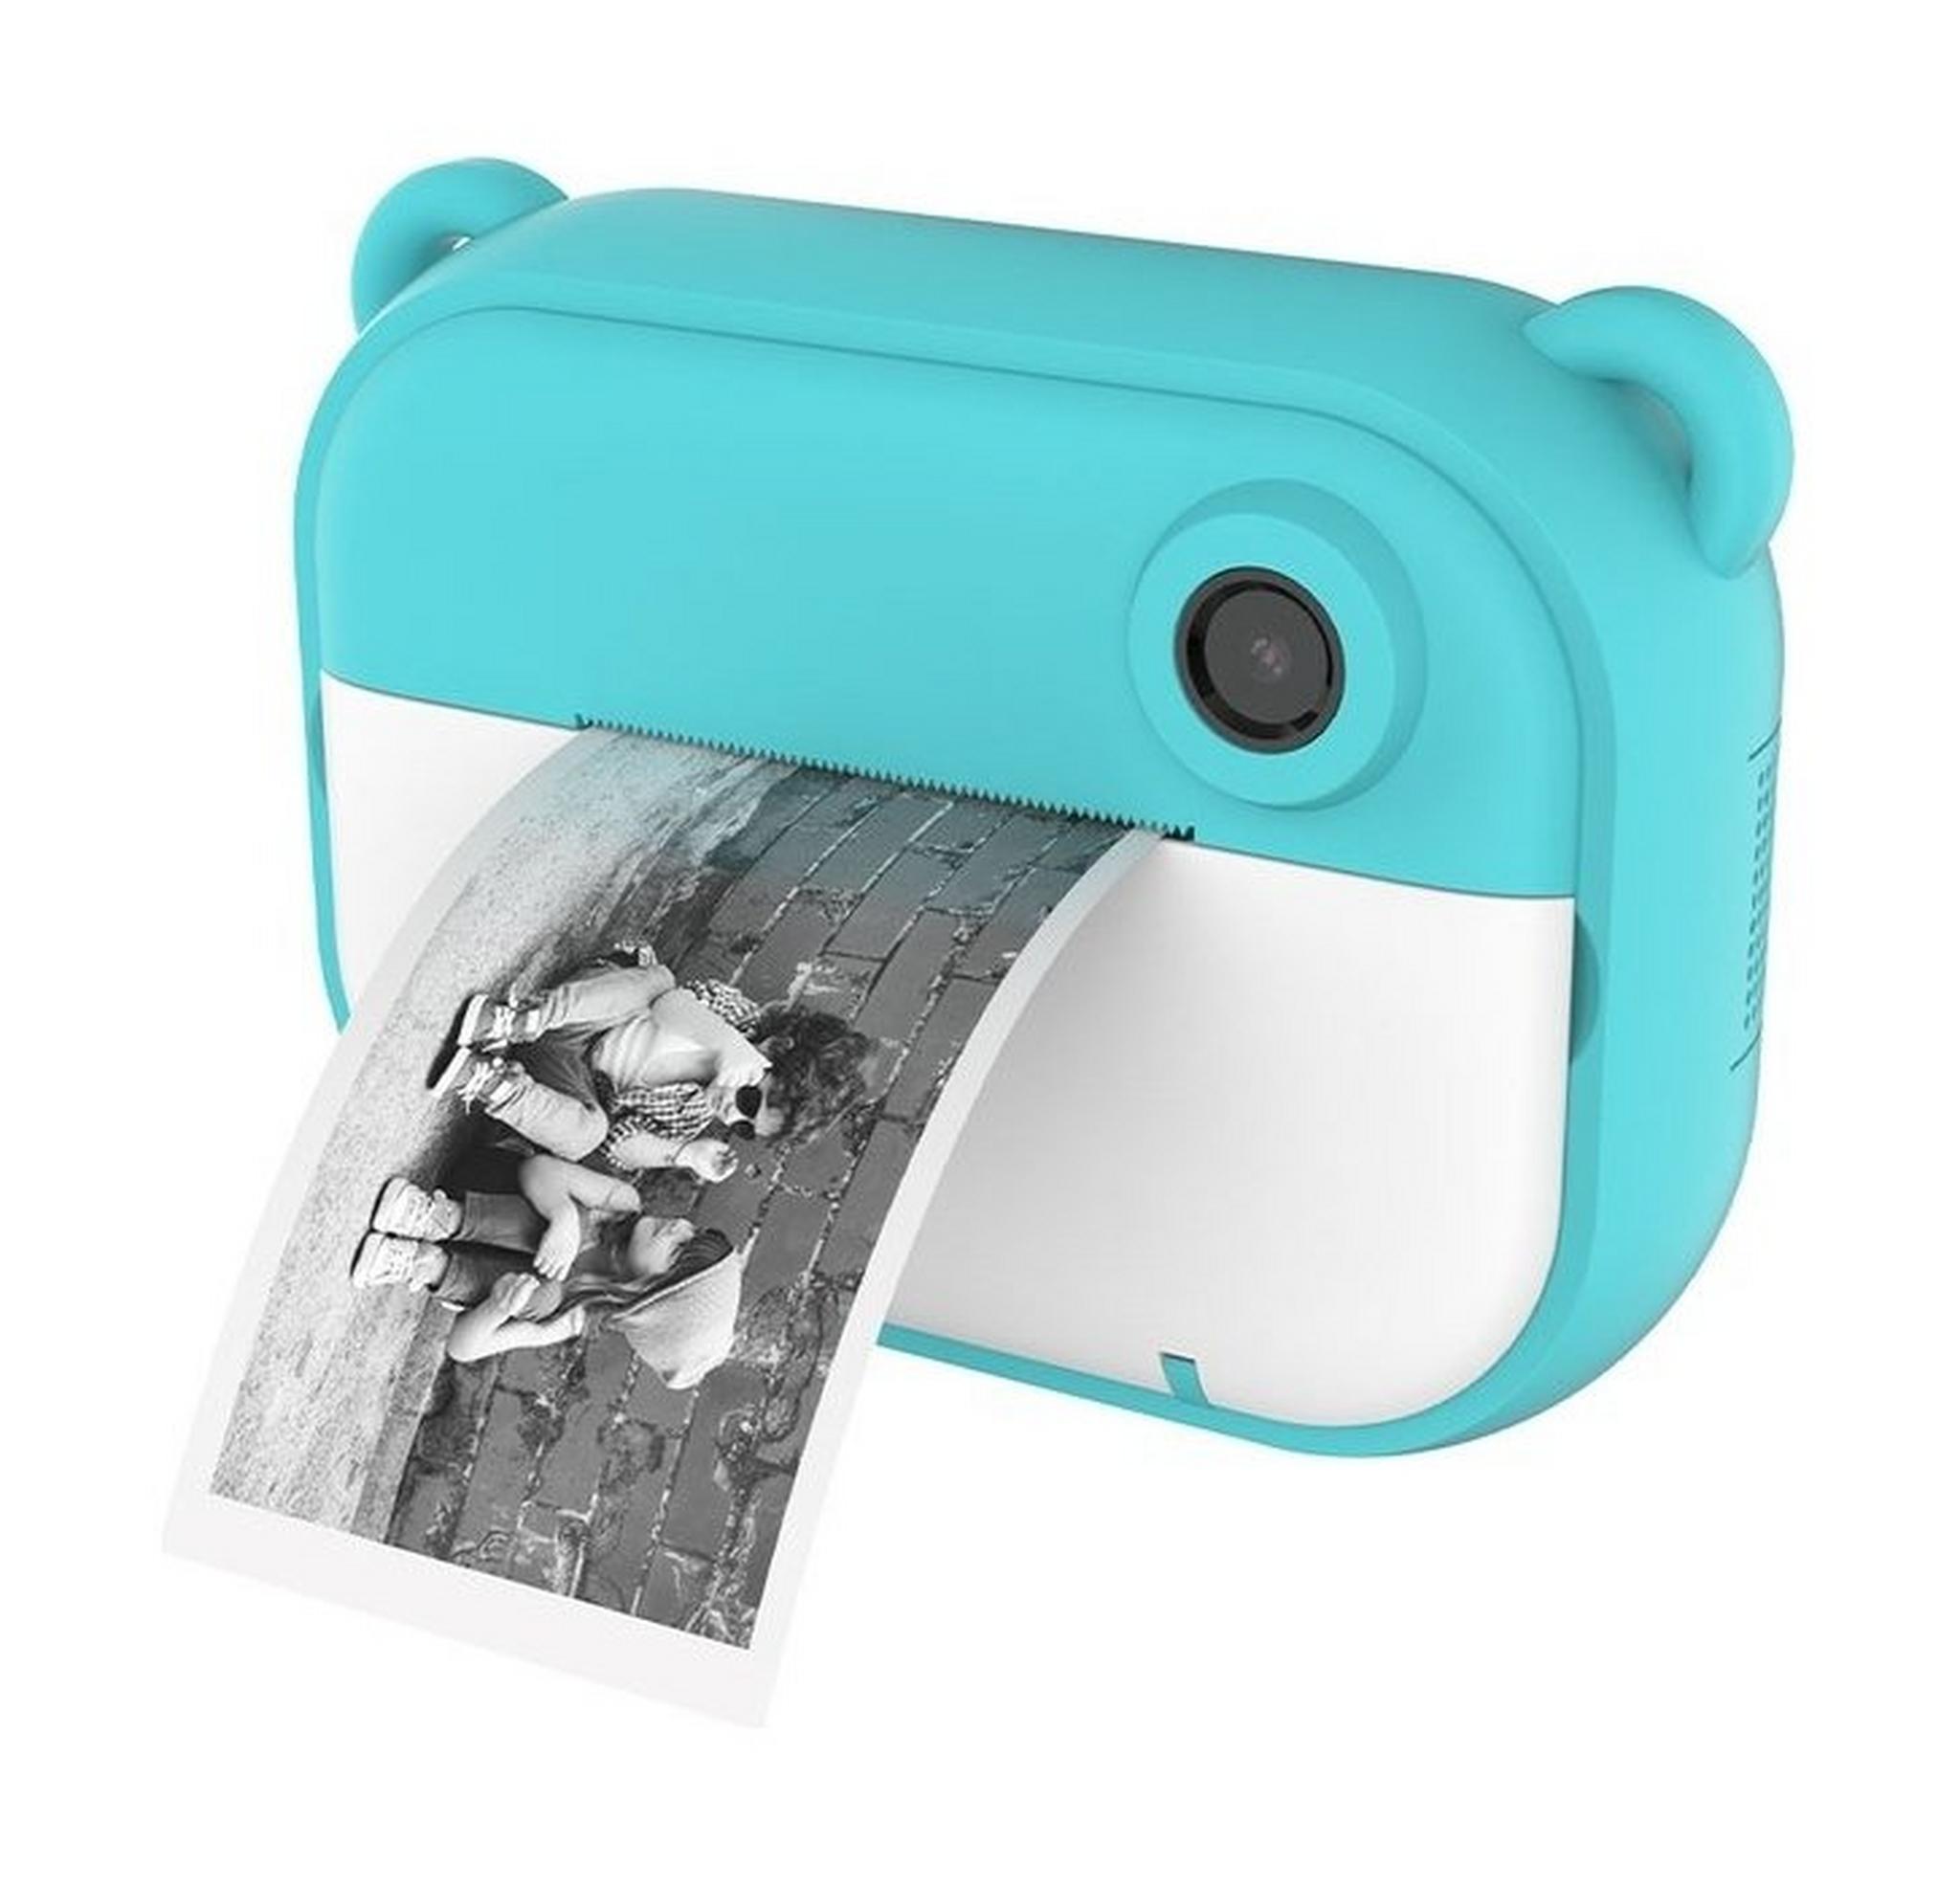 كاميرا ماي فيرست إنستا 2 - كاميرا الطباعة الفورية للأطفال بدقة 12 ميجابكسل - أزرق